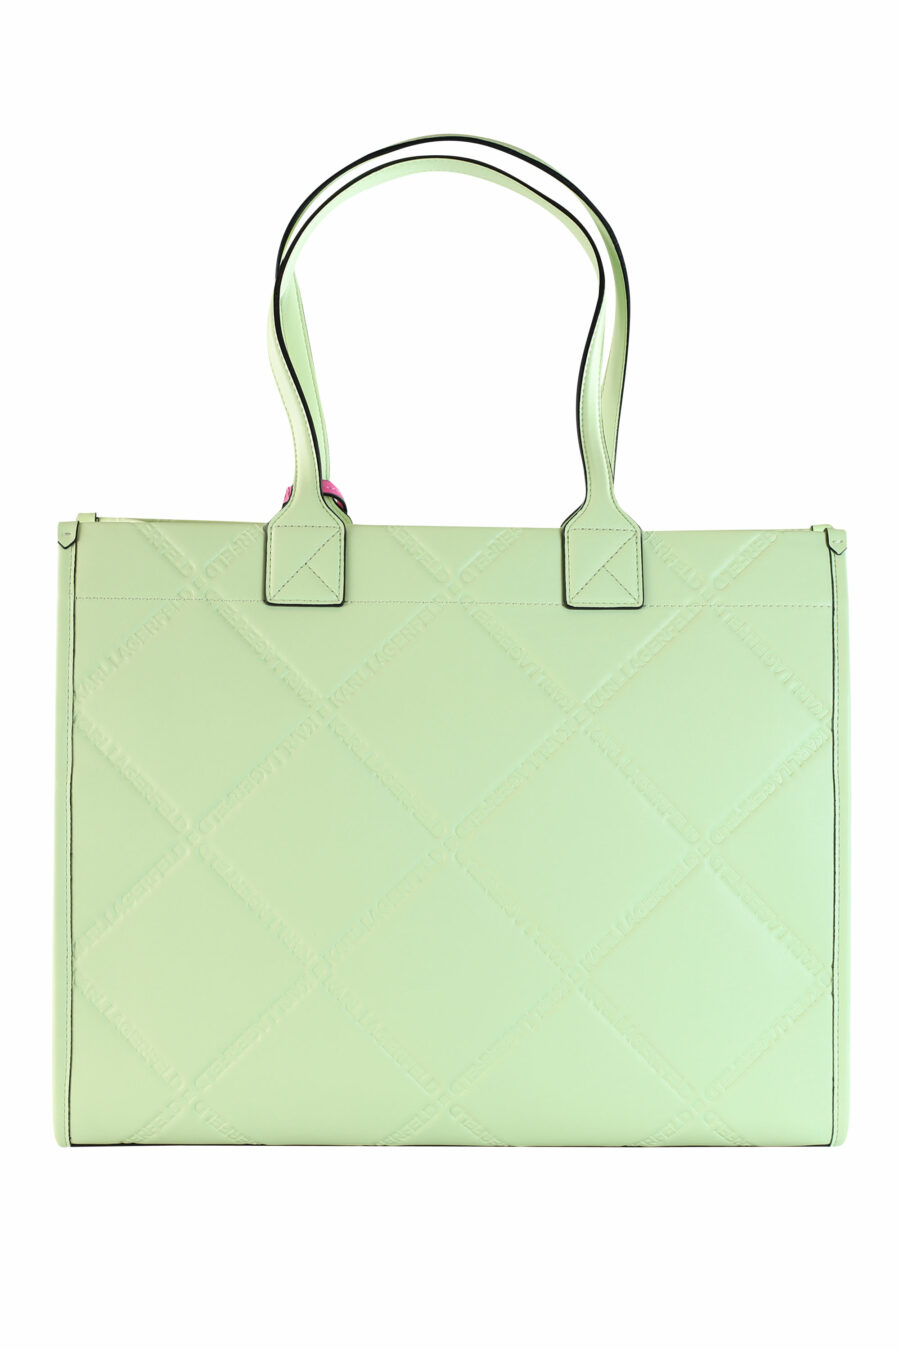 Tote bag verde "k/skuare" con logo en relieve - 8720744102502 3